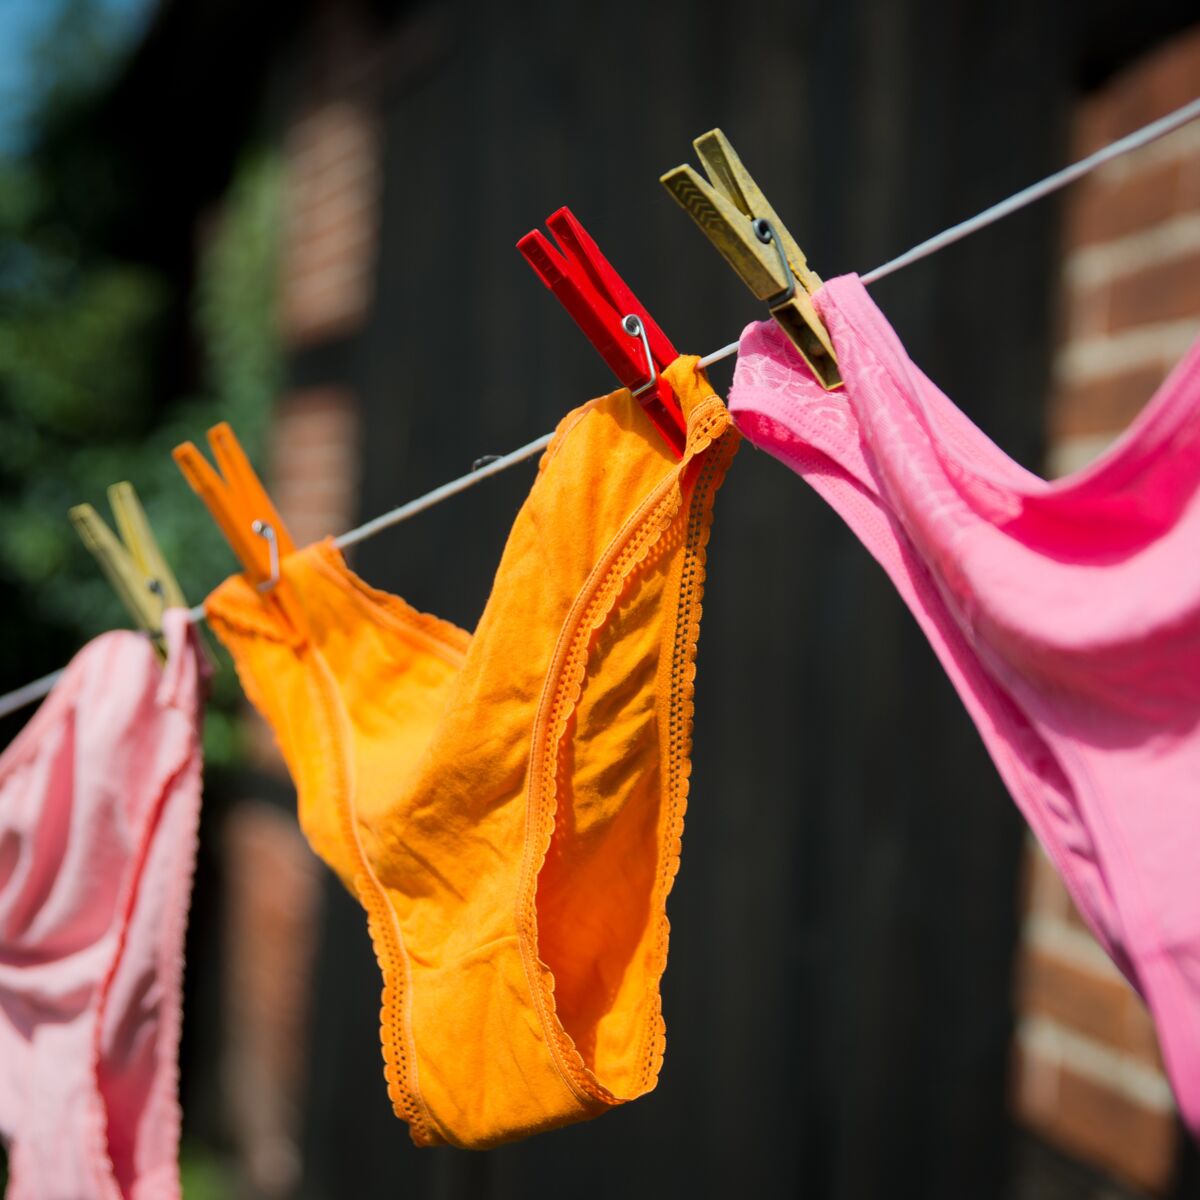 À Quelle Température Laver les Sous-Vêtements ? Les Astuces